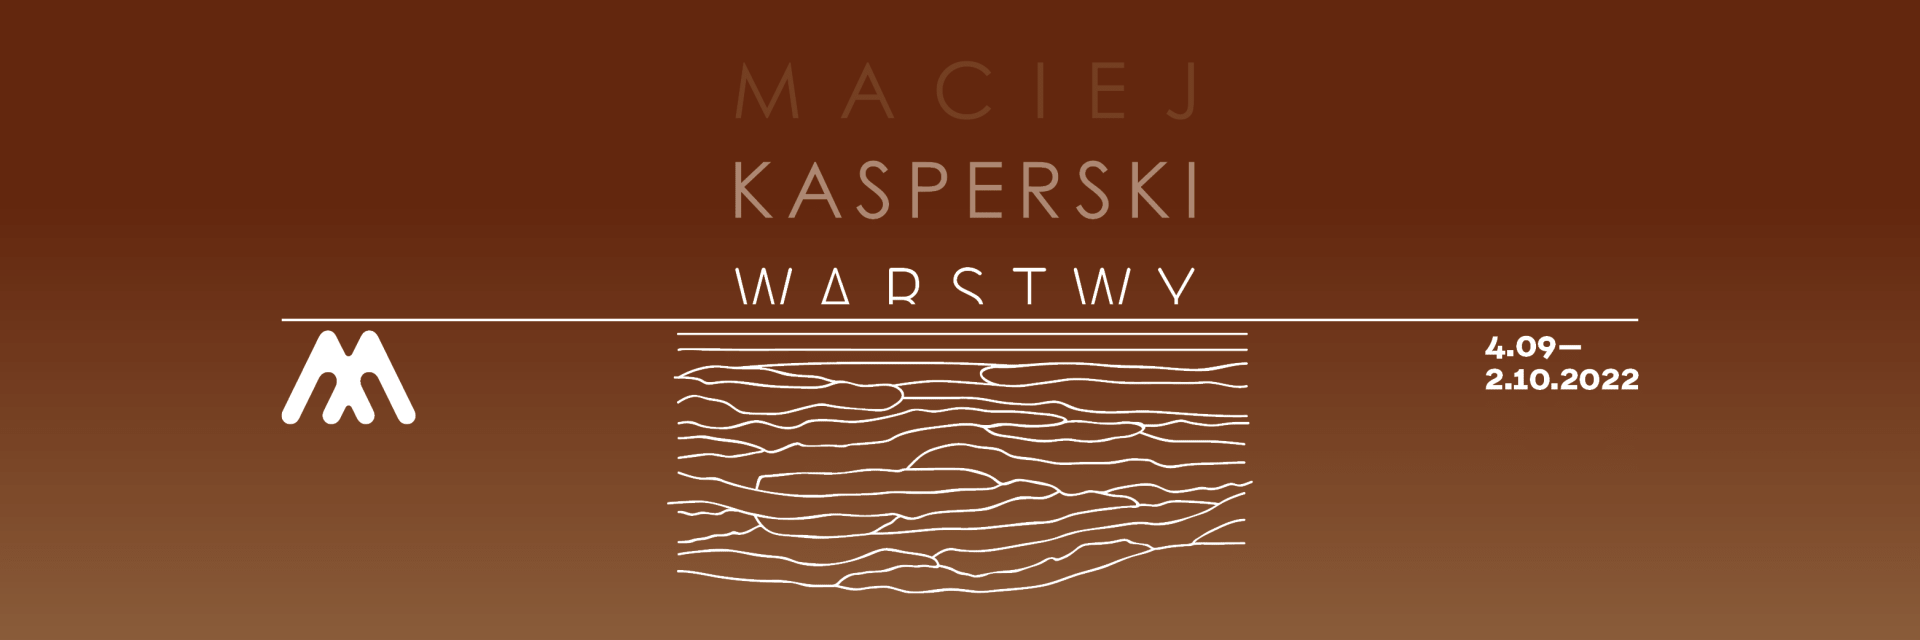 Grafika promująca wystawę - Maciej Kasperski/Warstwy